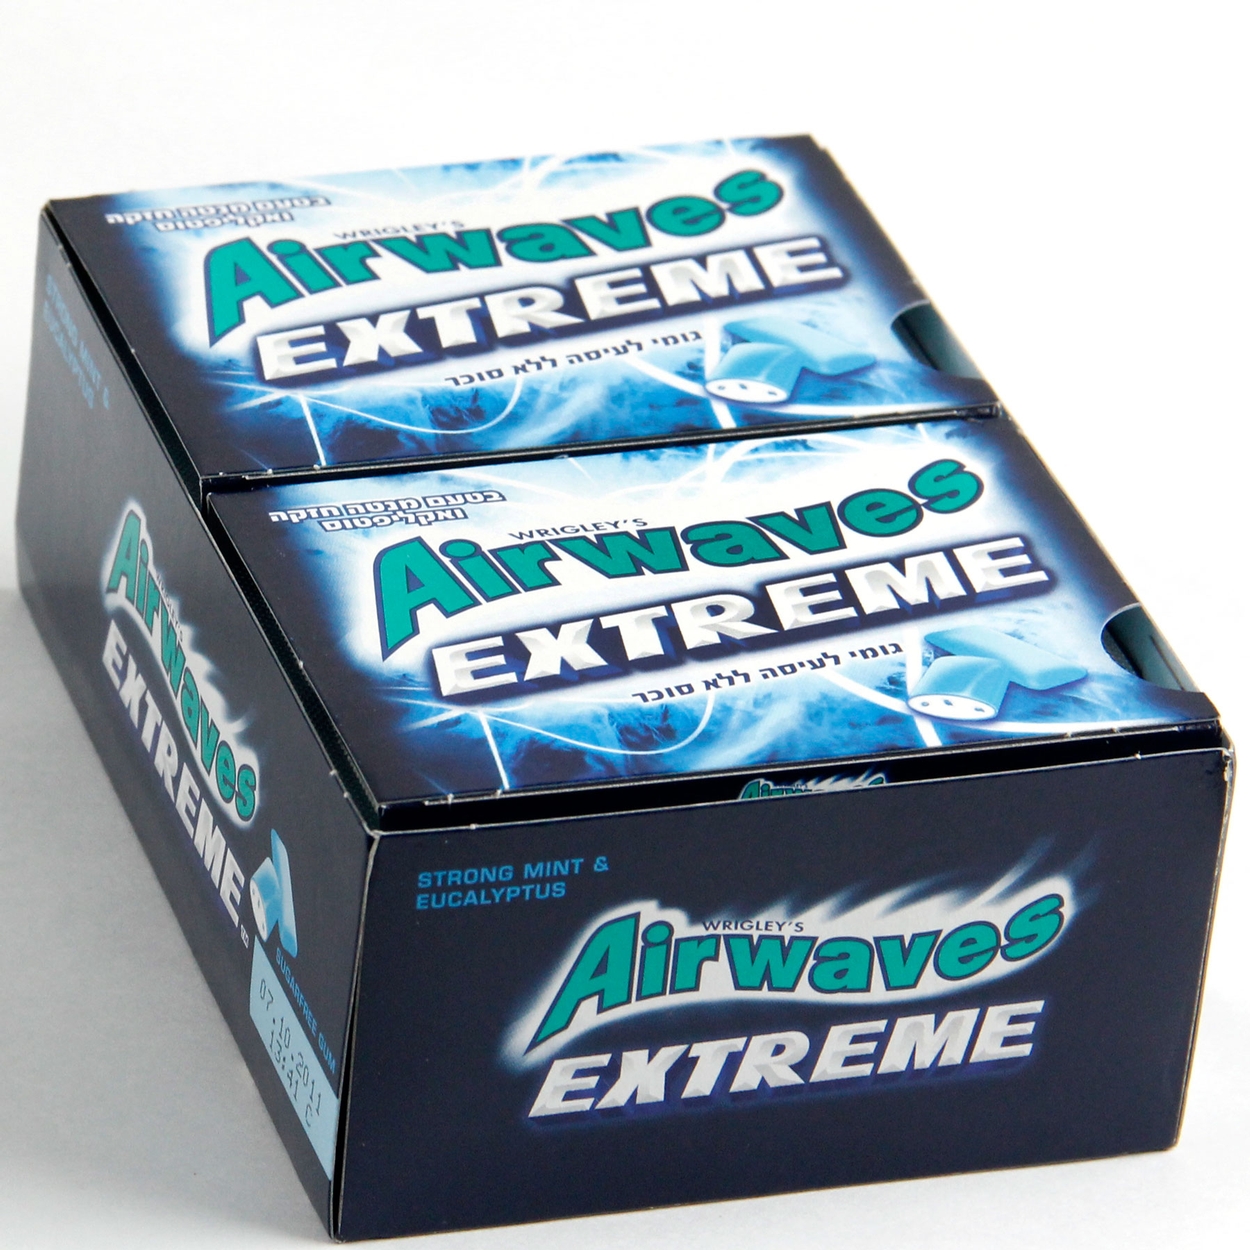 Airwaves Extreme Menthol chewing gum, airwaves extrême